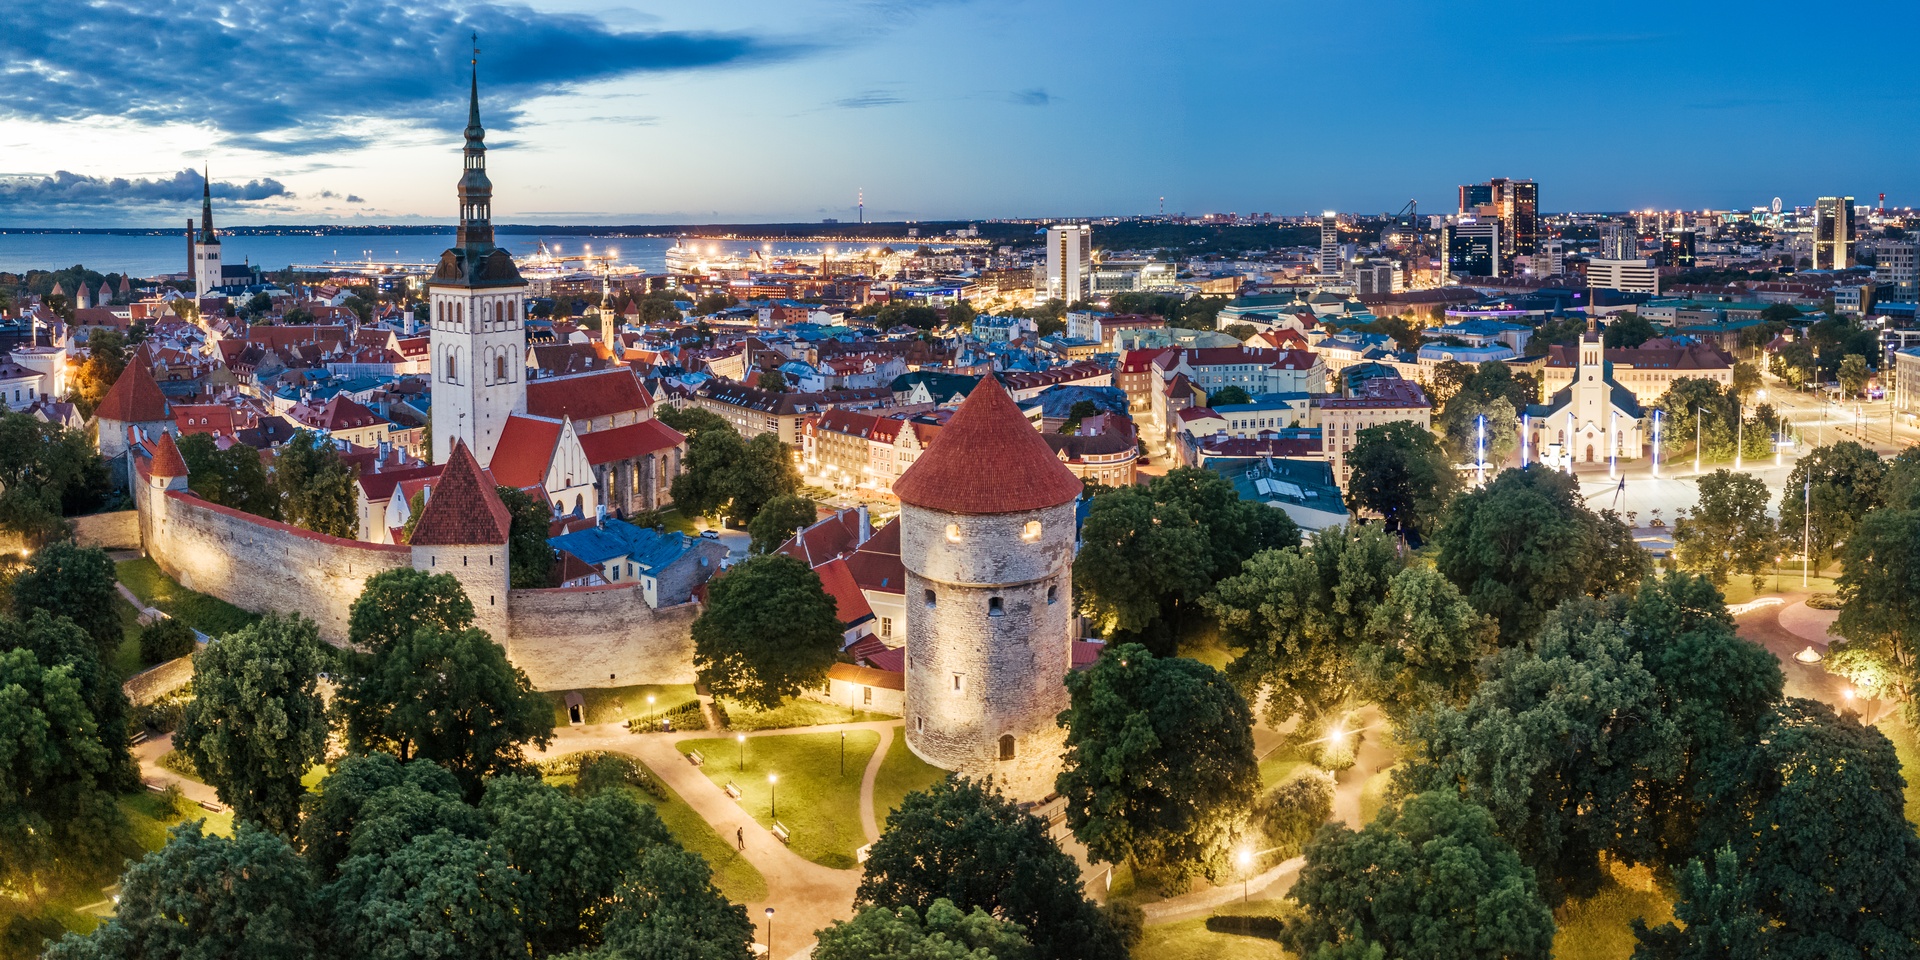 Onde fica a Estônia? A foto mostra alguns edifícios da Cidade Velha de Tallinn, capital da Estônia, iluminados ao anoitecer.